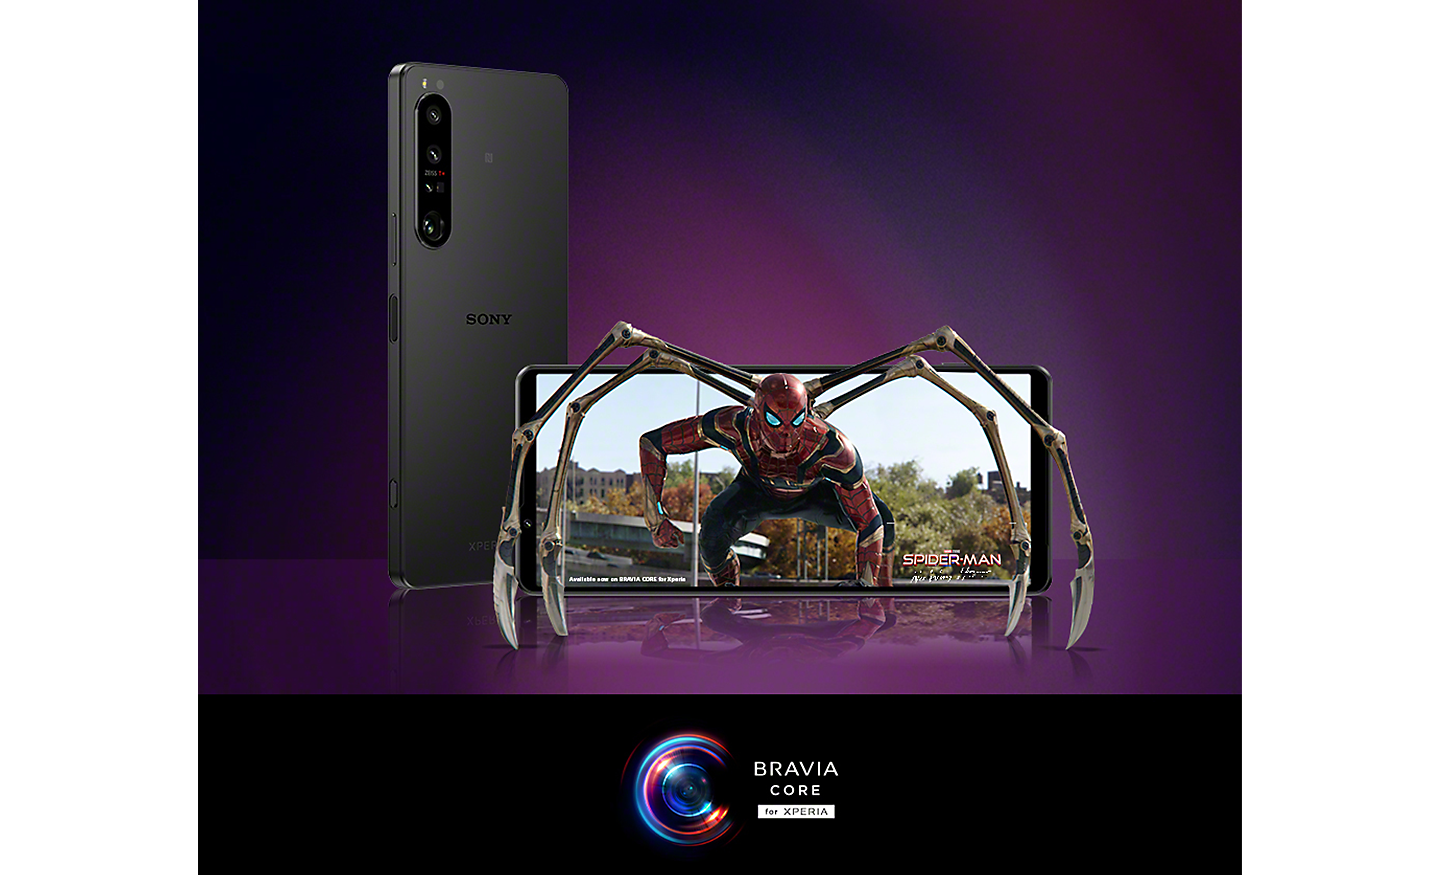 Twee Xperia-smartphones, waarvan één met een afbeelding van Spider-Man: No Way Home, plus logo van BRAVIA CORE voor Xperia